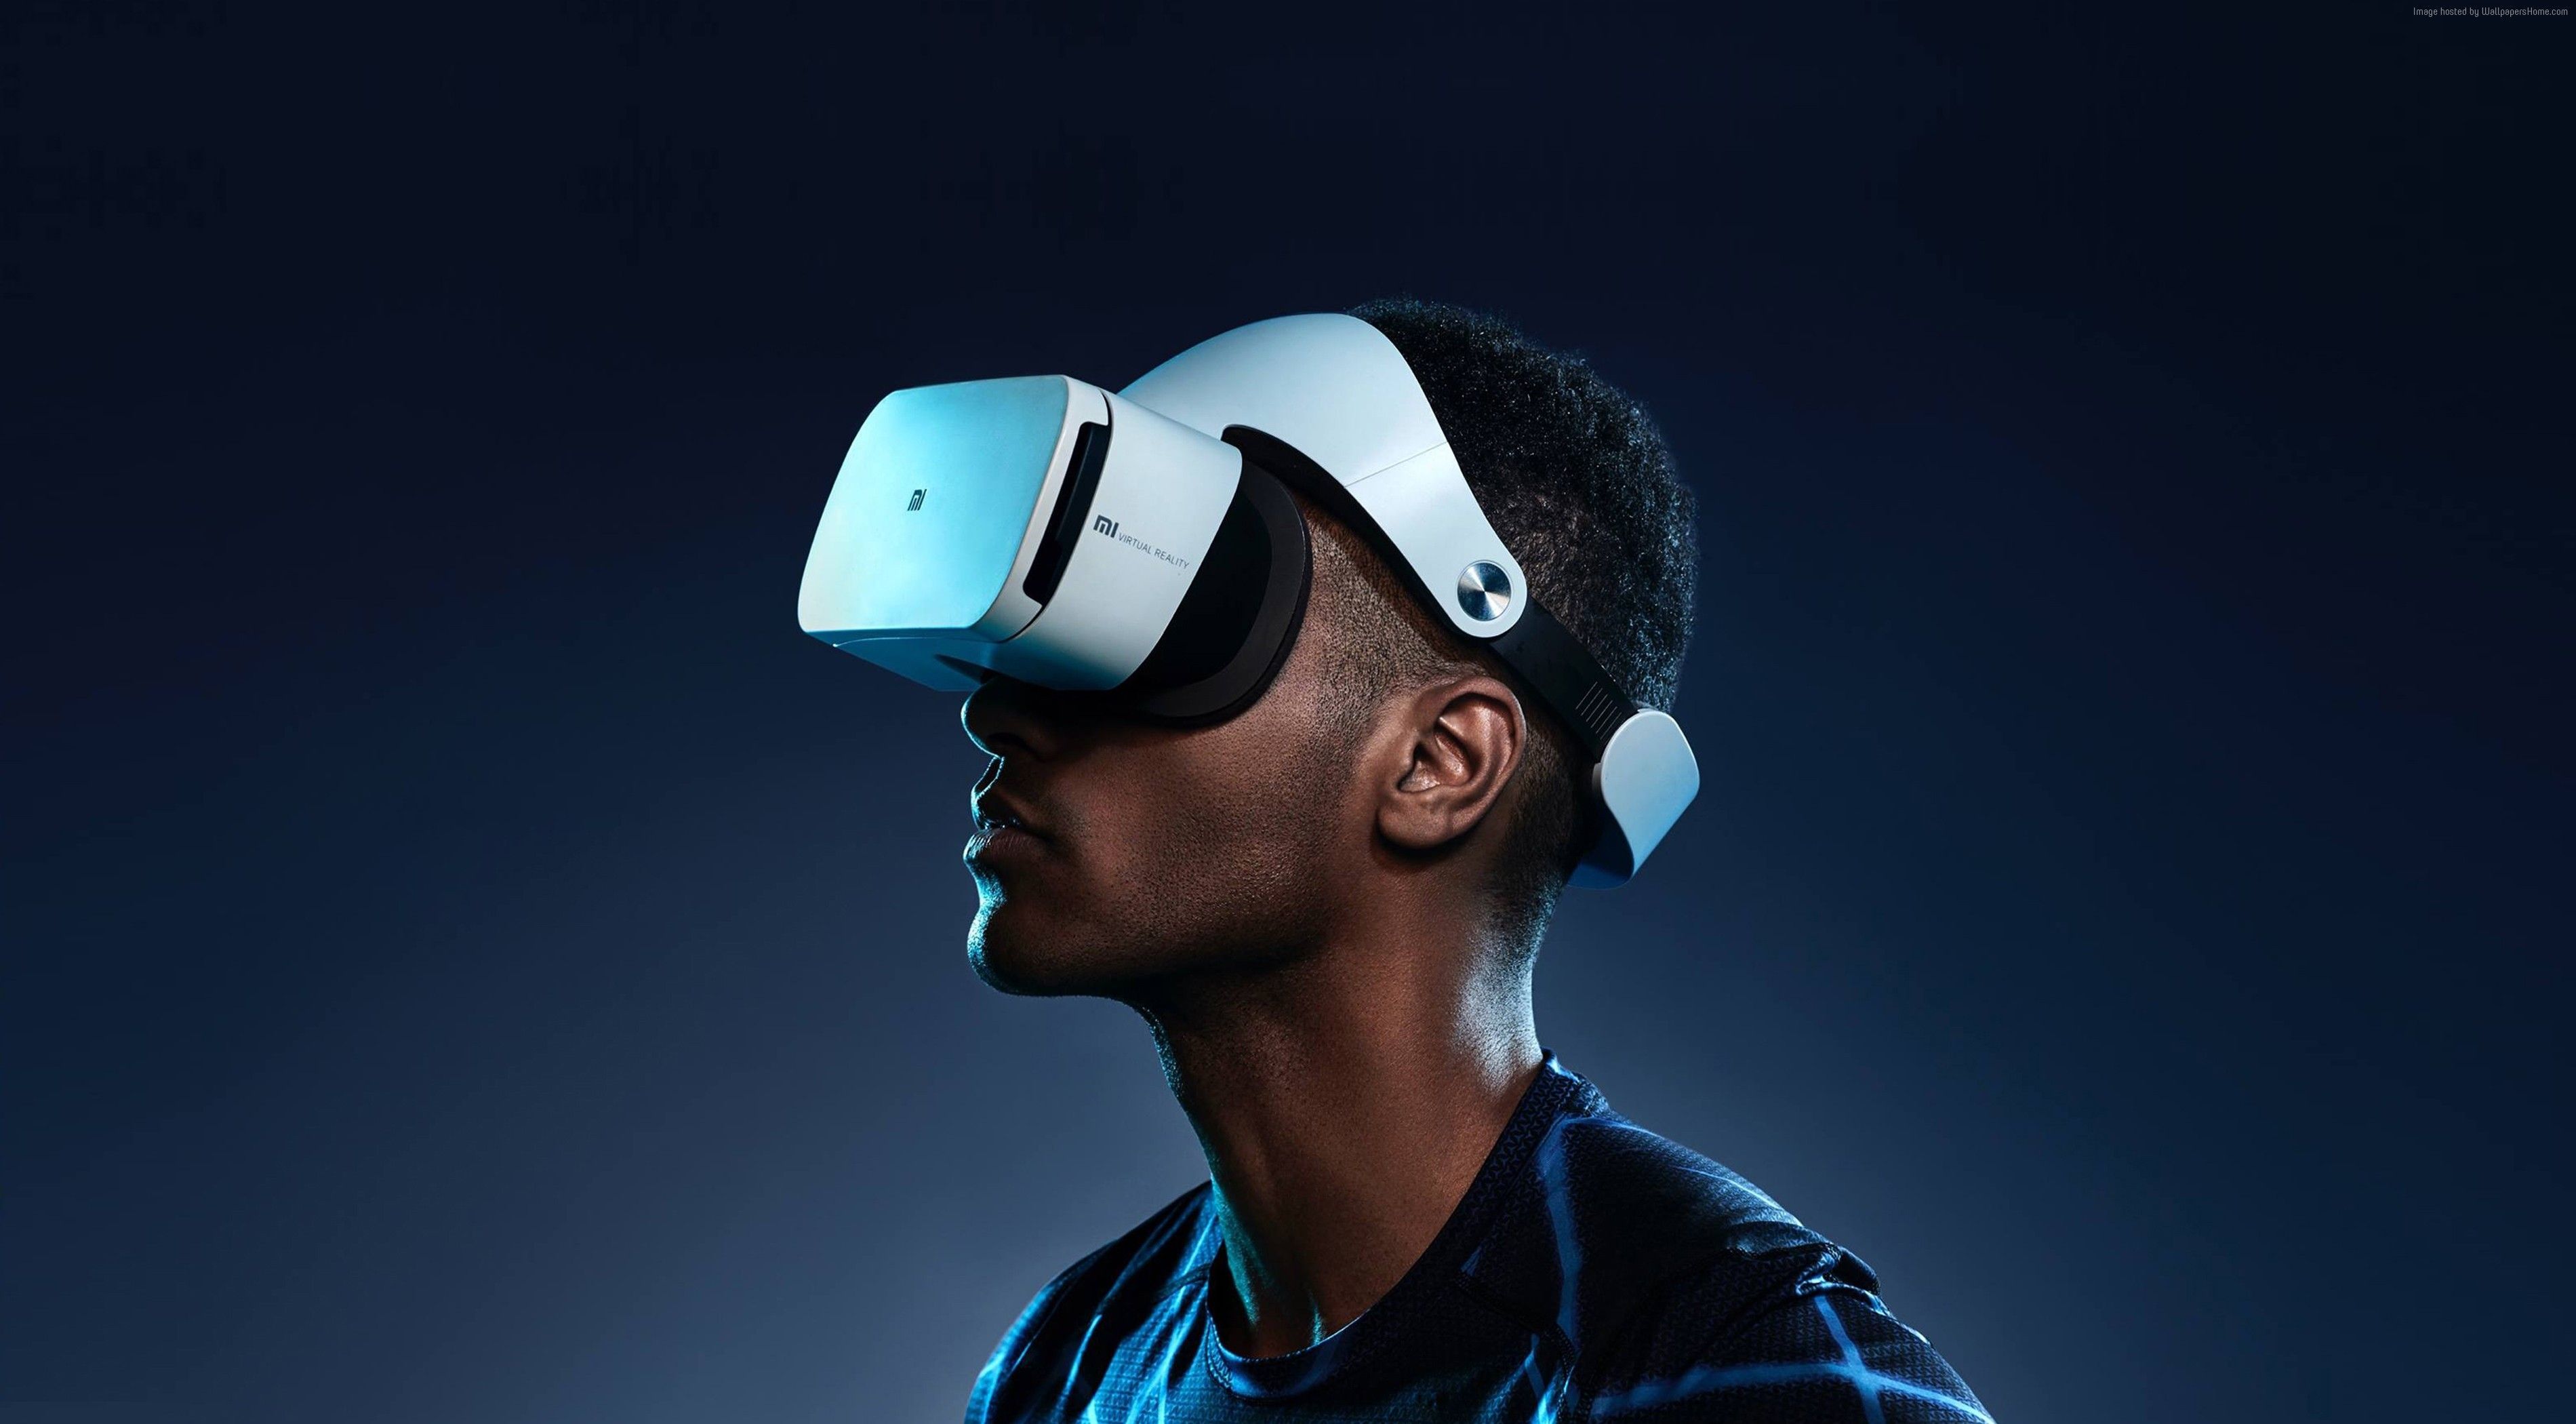 una imagen de un hombre que usa un auricular Sony VR, lo que implica desarrollos web3 entrantes.